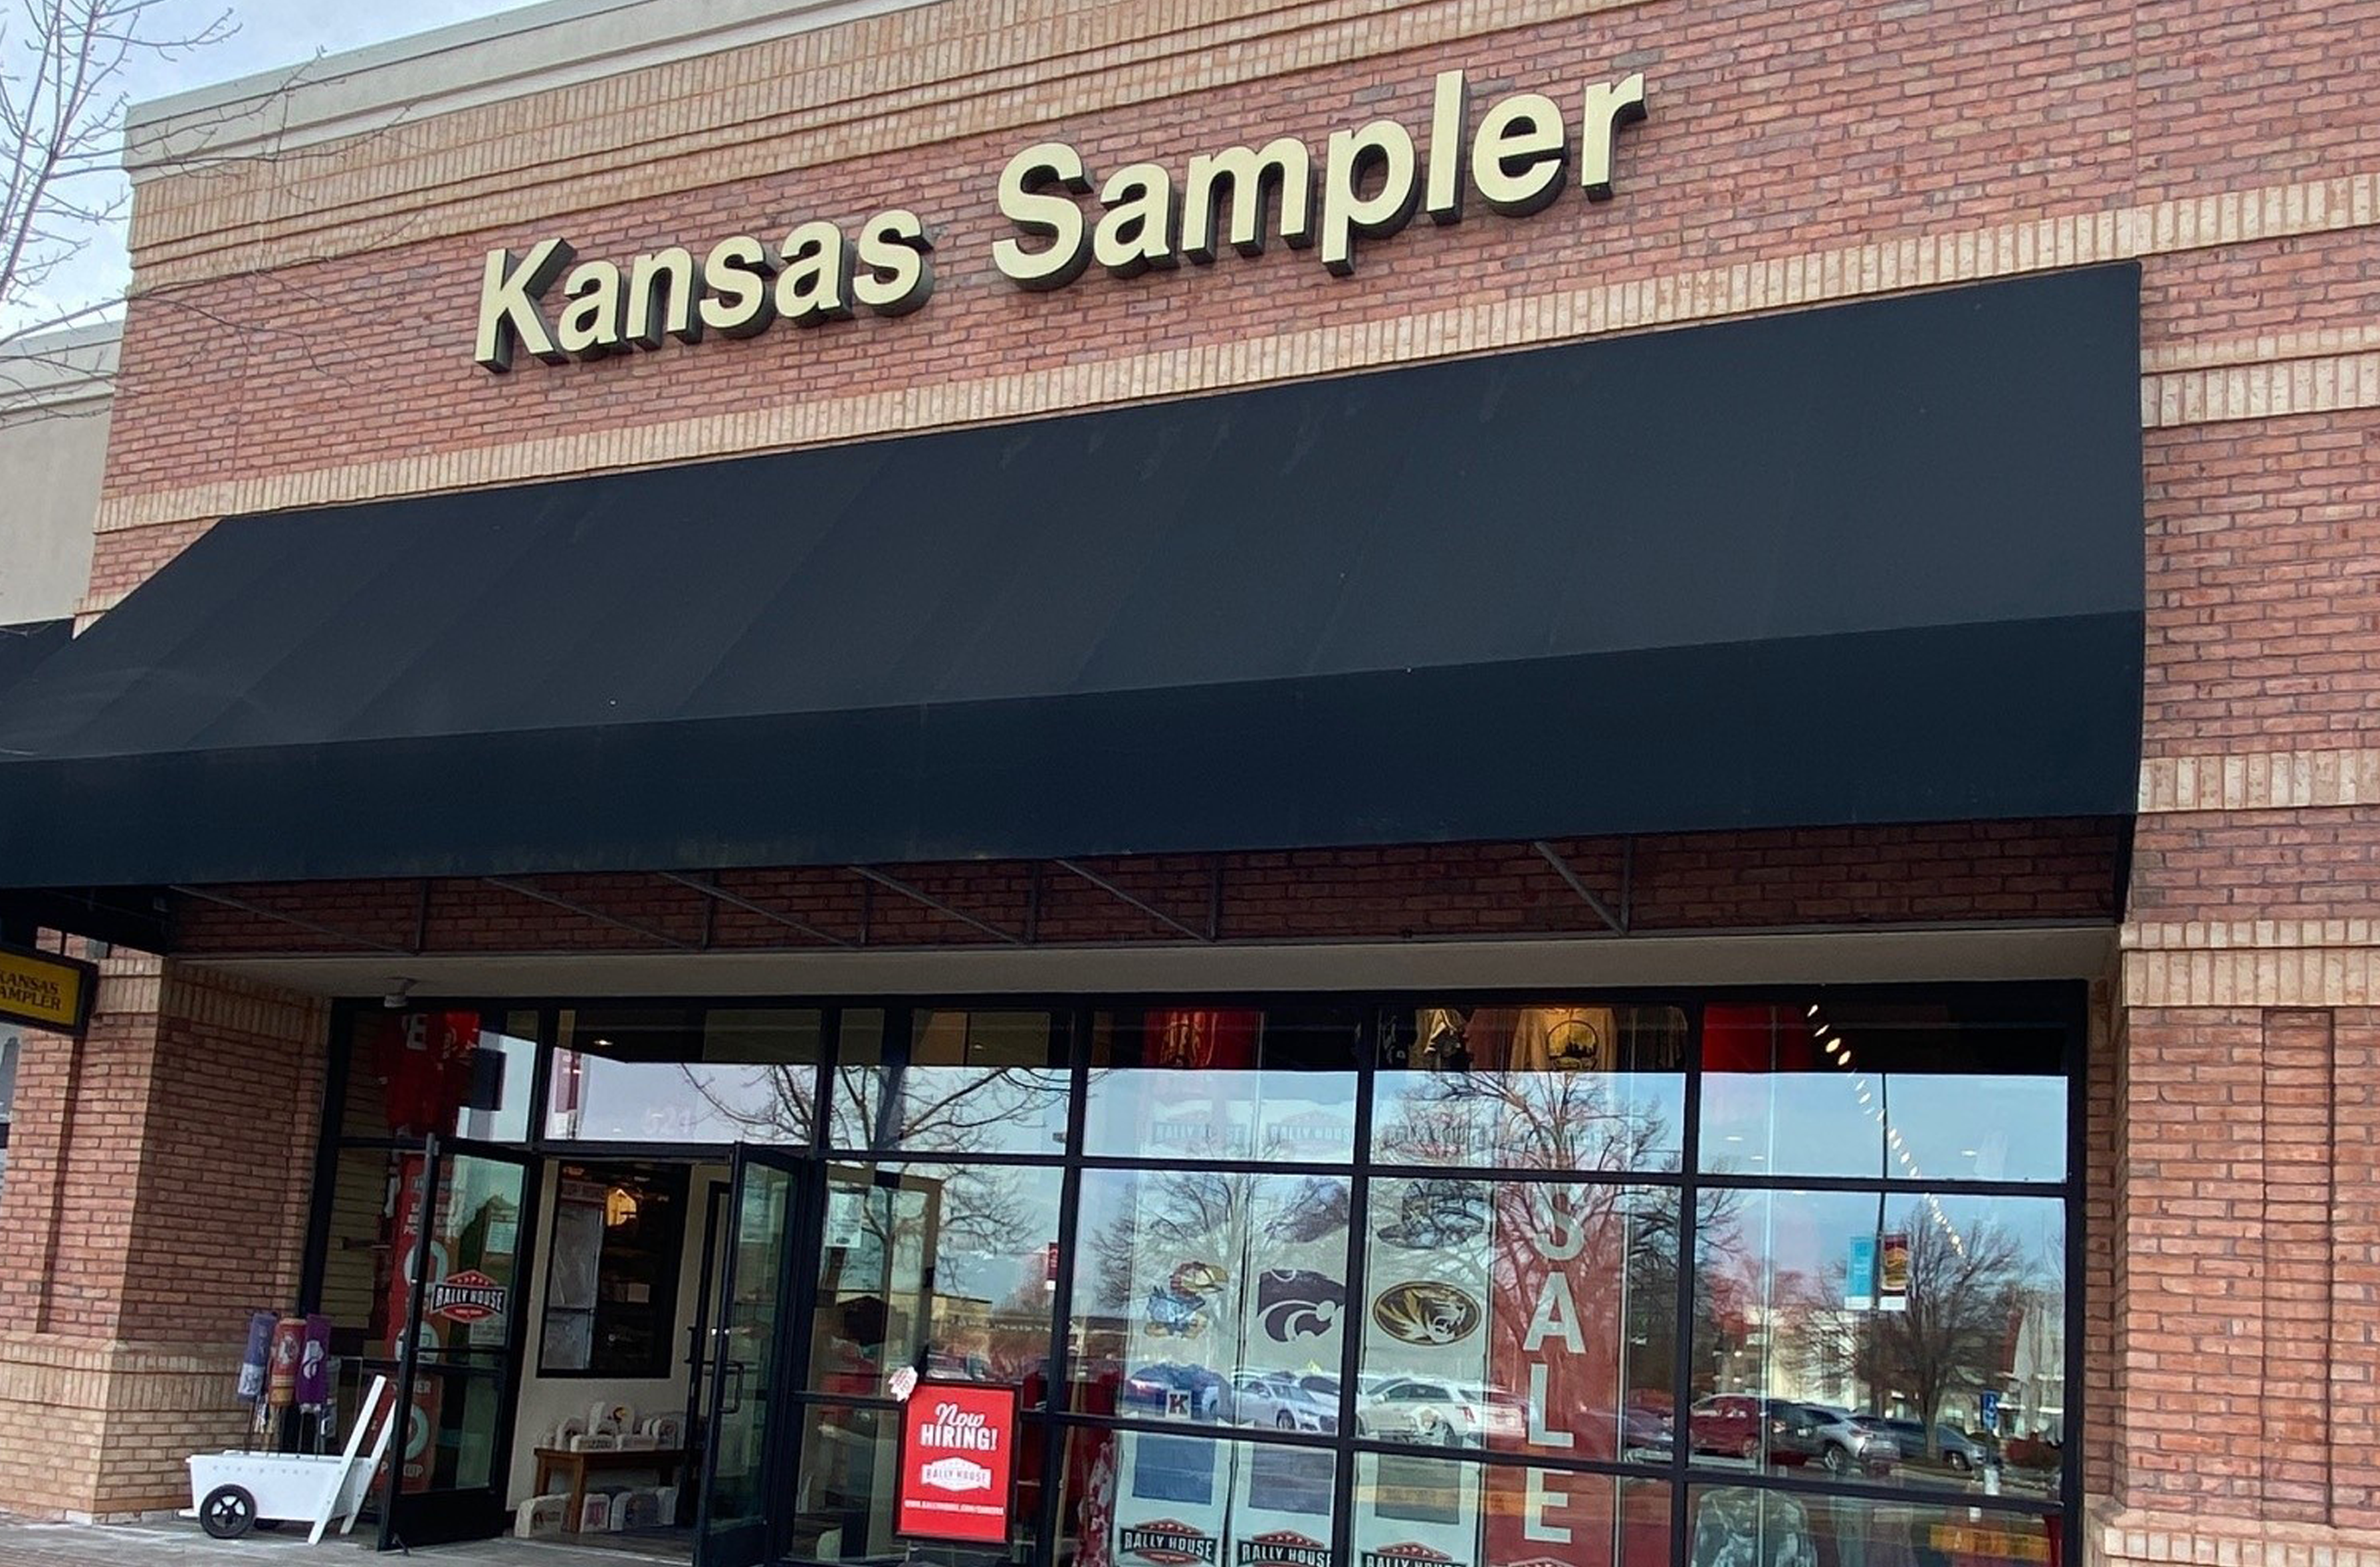 Kansas Sampler